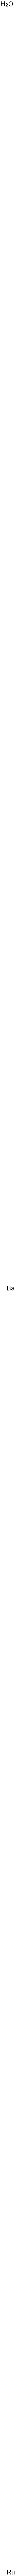 barium ruthenium trioxide Structure